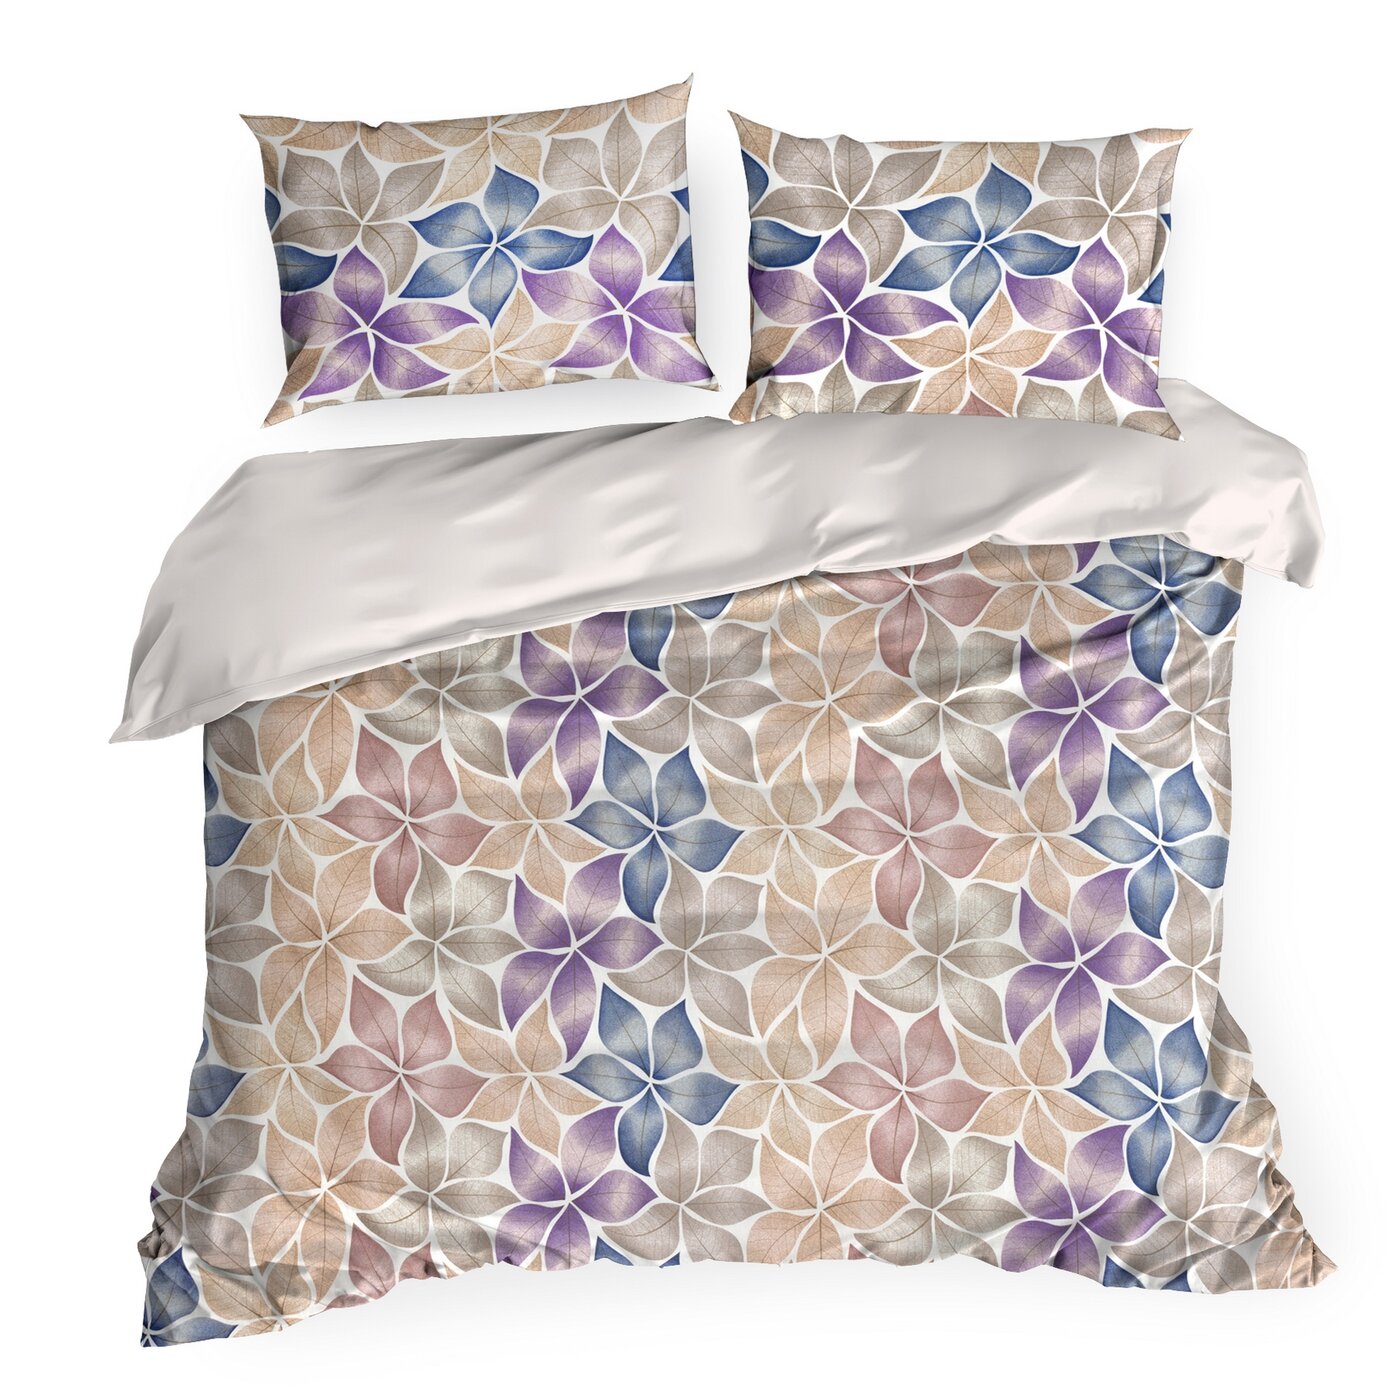 Lenjerie de pat cu un motiv colorat de flori simetrice multicolor IDA 05 Perdele de Poveste